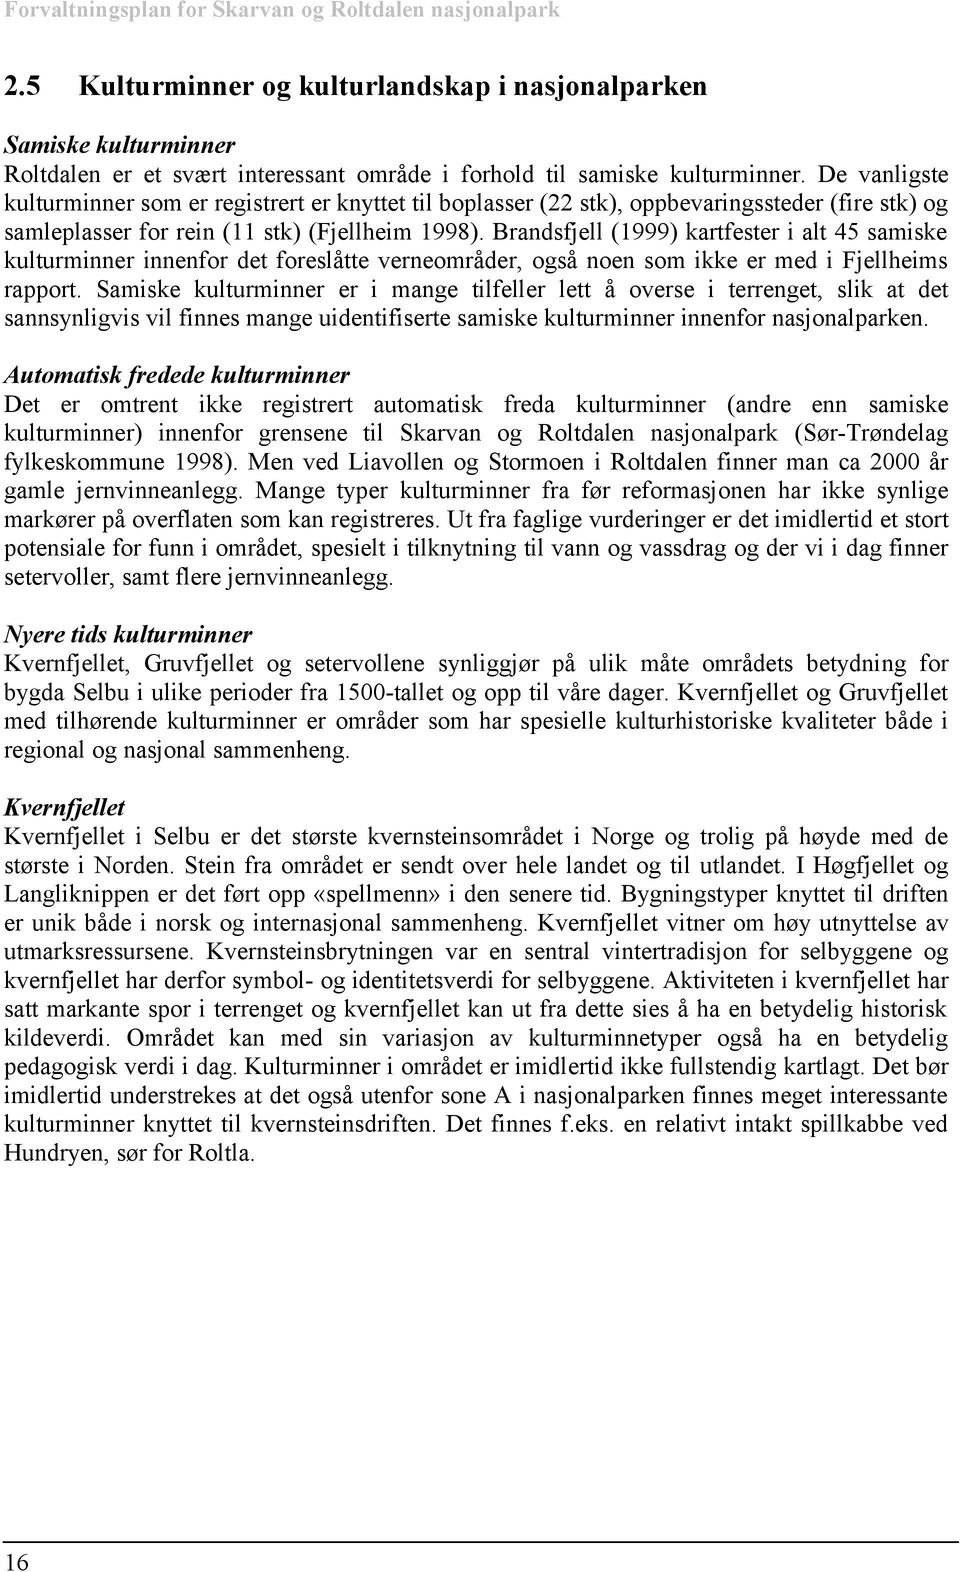 Brandsfjell (1999) kartfester i alt 45 samiske kulturminner innenfor det foreslåtte verneområder, også noen som ikke er med i Fjellheims rapport.